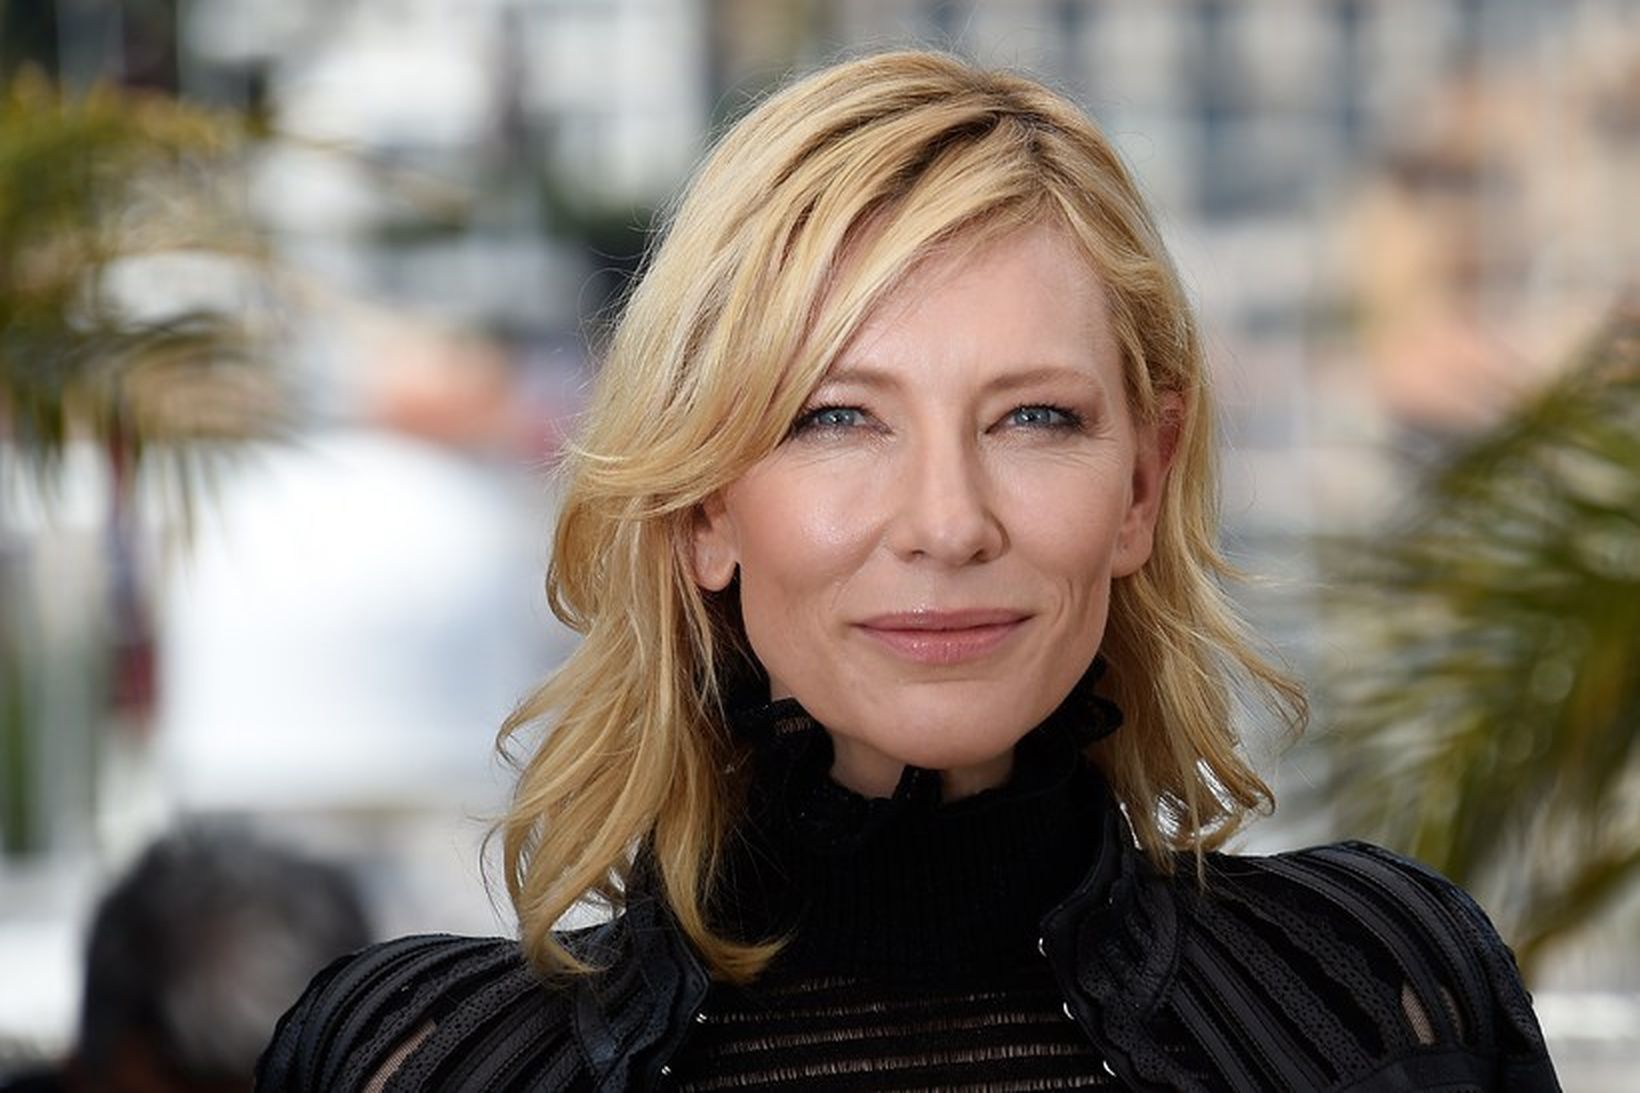 Ástralska leikkonan Cate Blanchett ættleiddi litla stúlku á árinu.